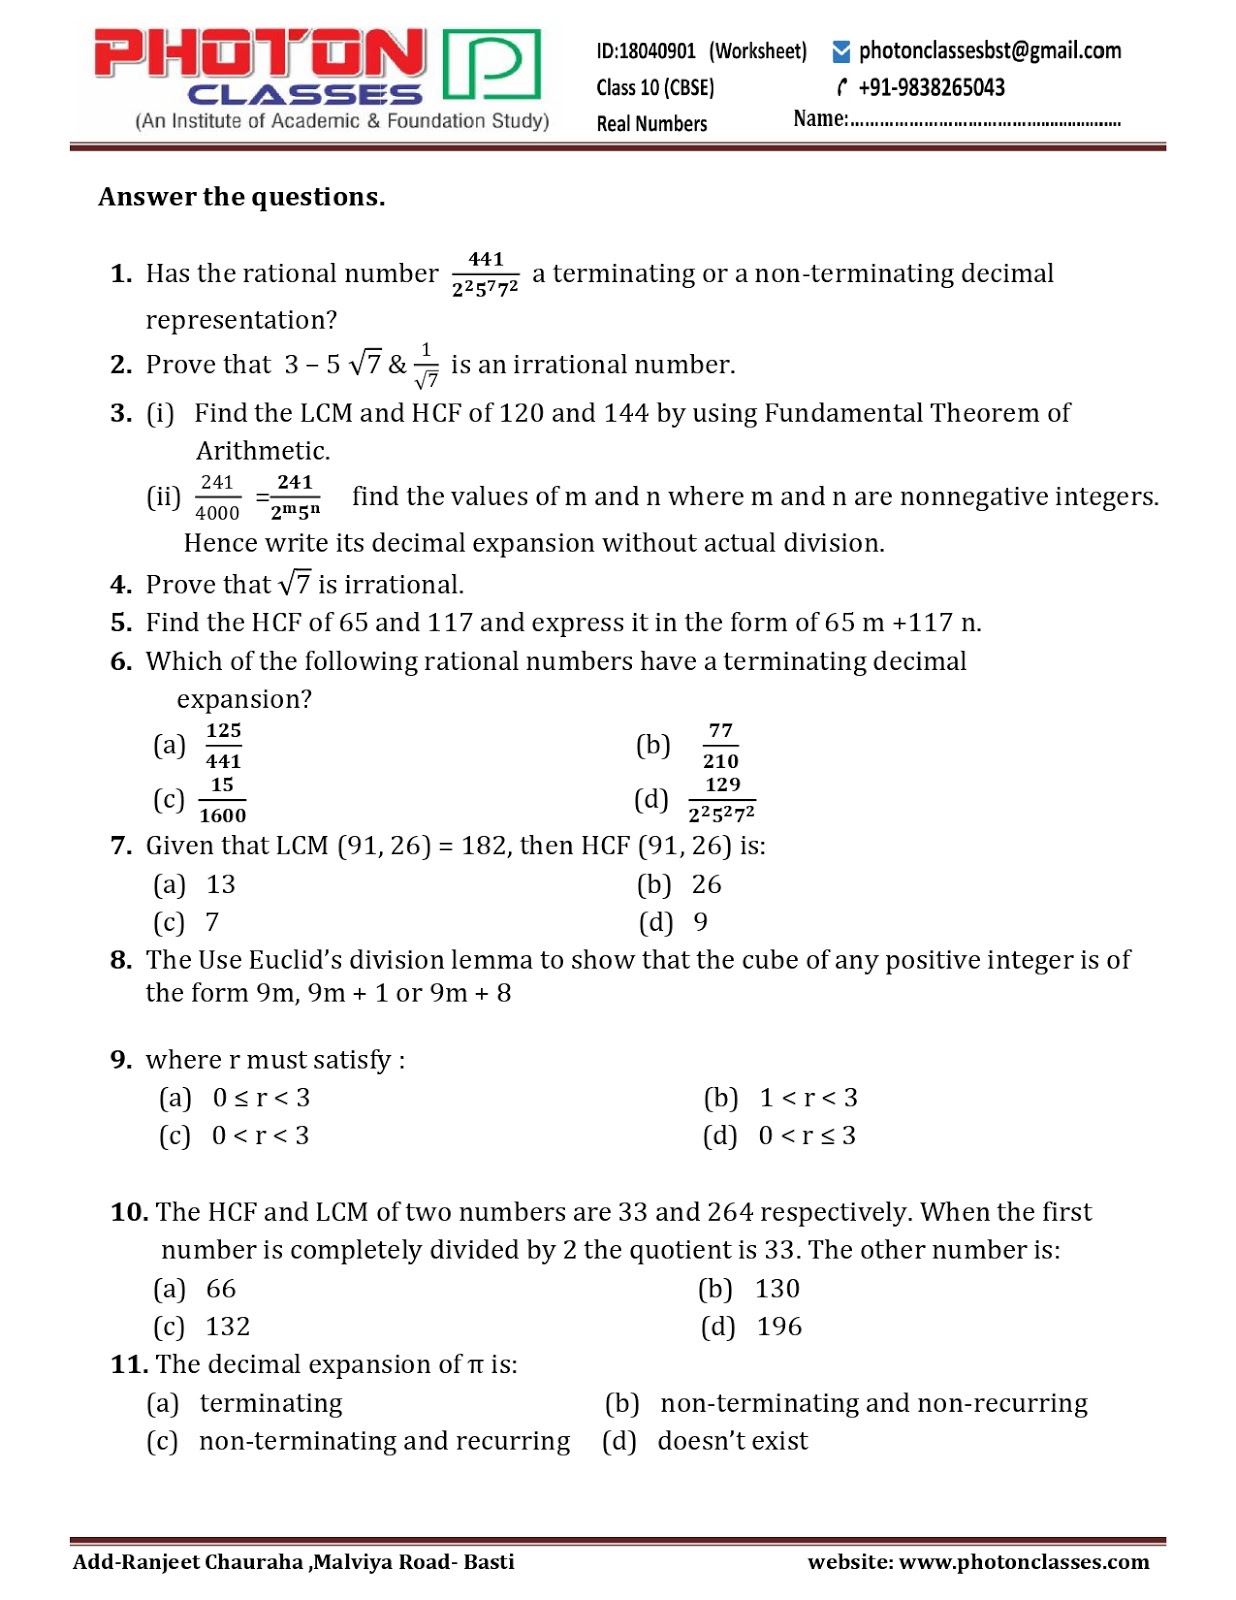 CBSE Class 10 NCERT Worksheet Mathematics Real Number Chapter 1